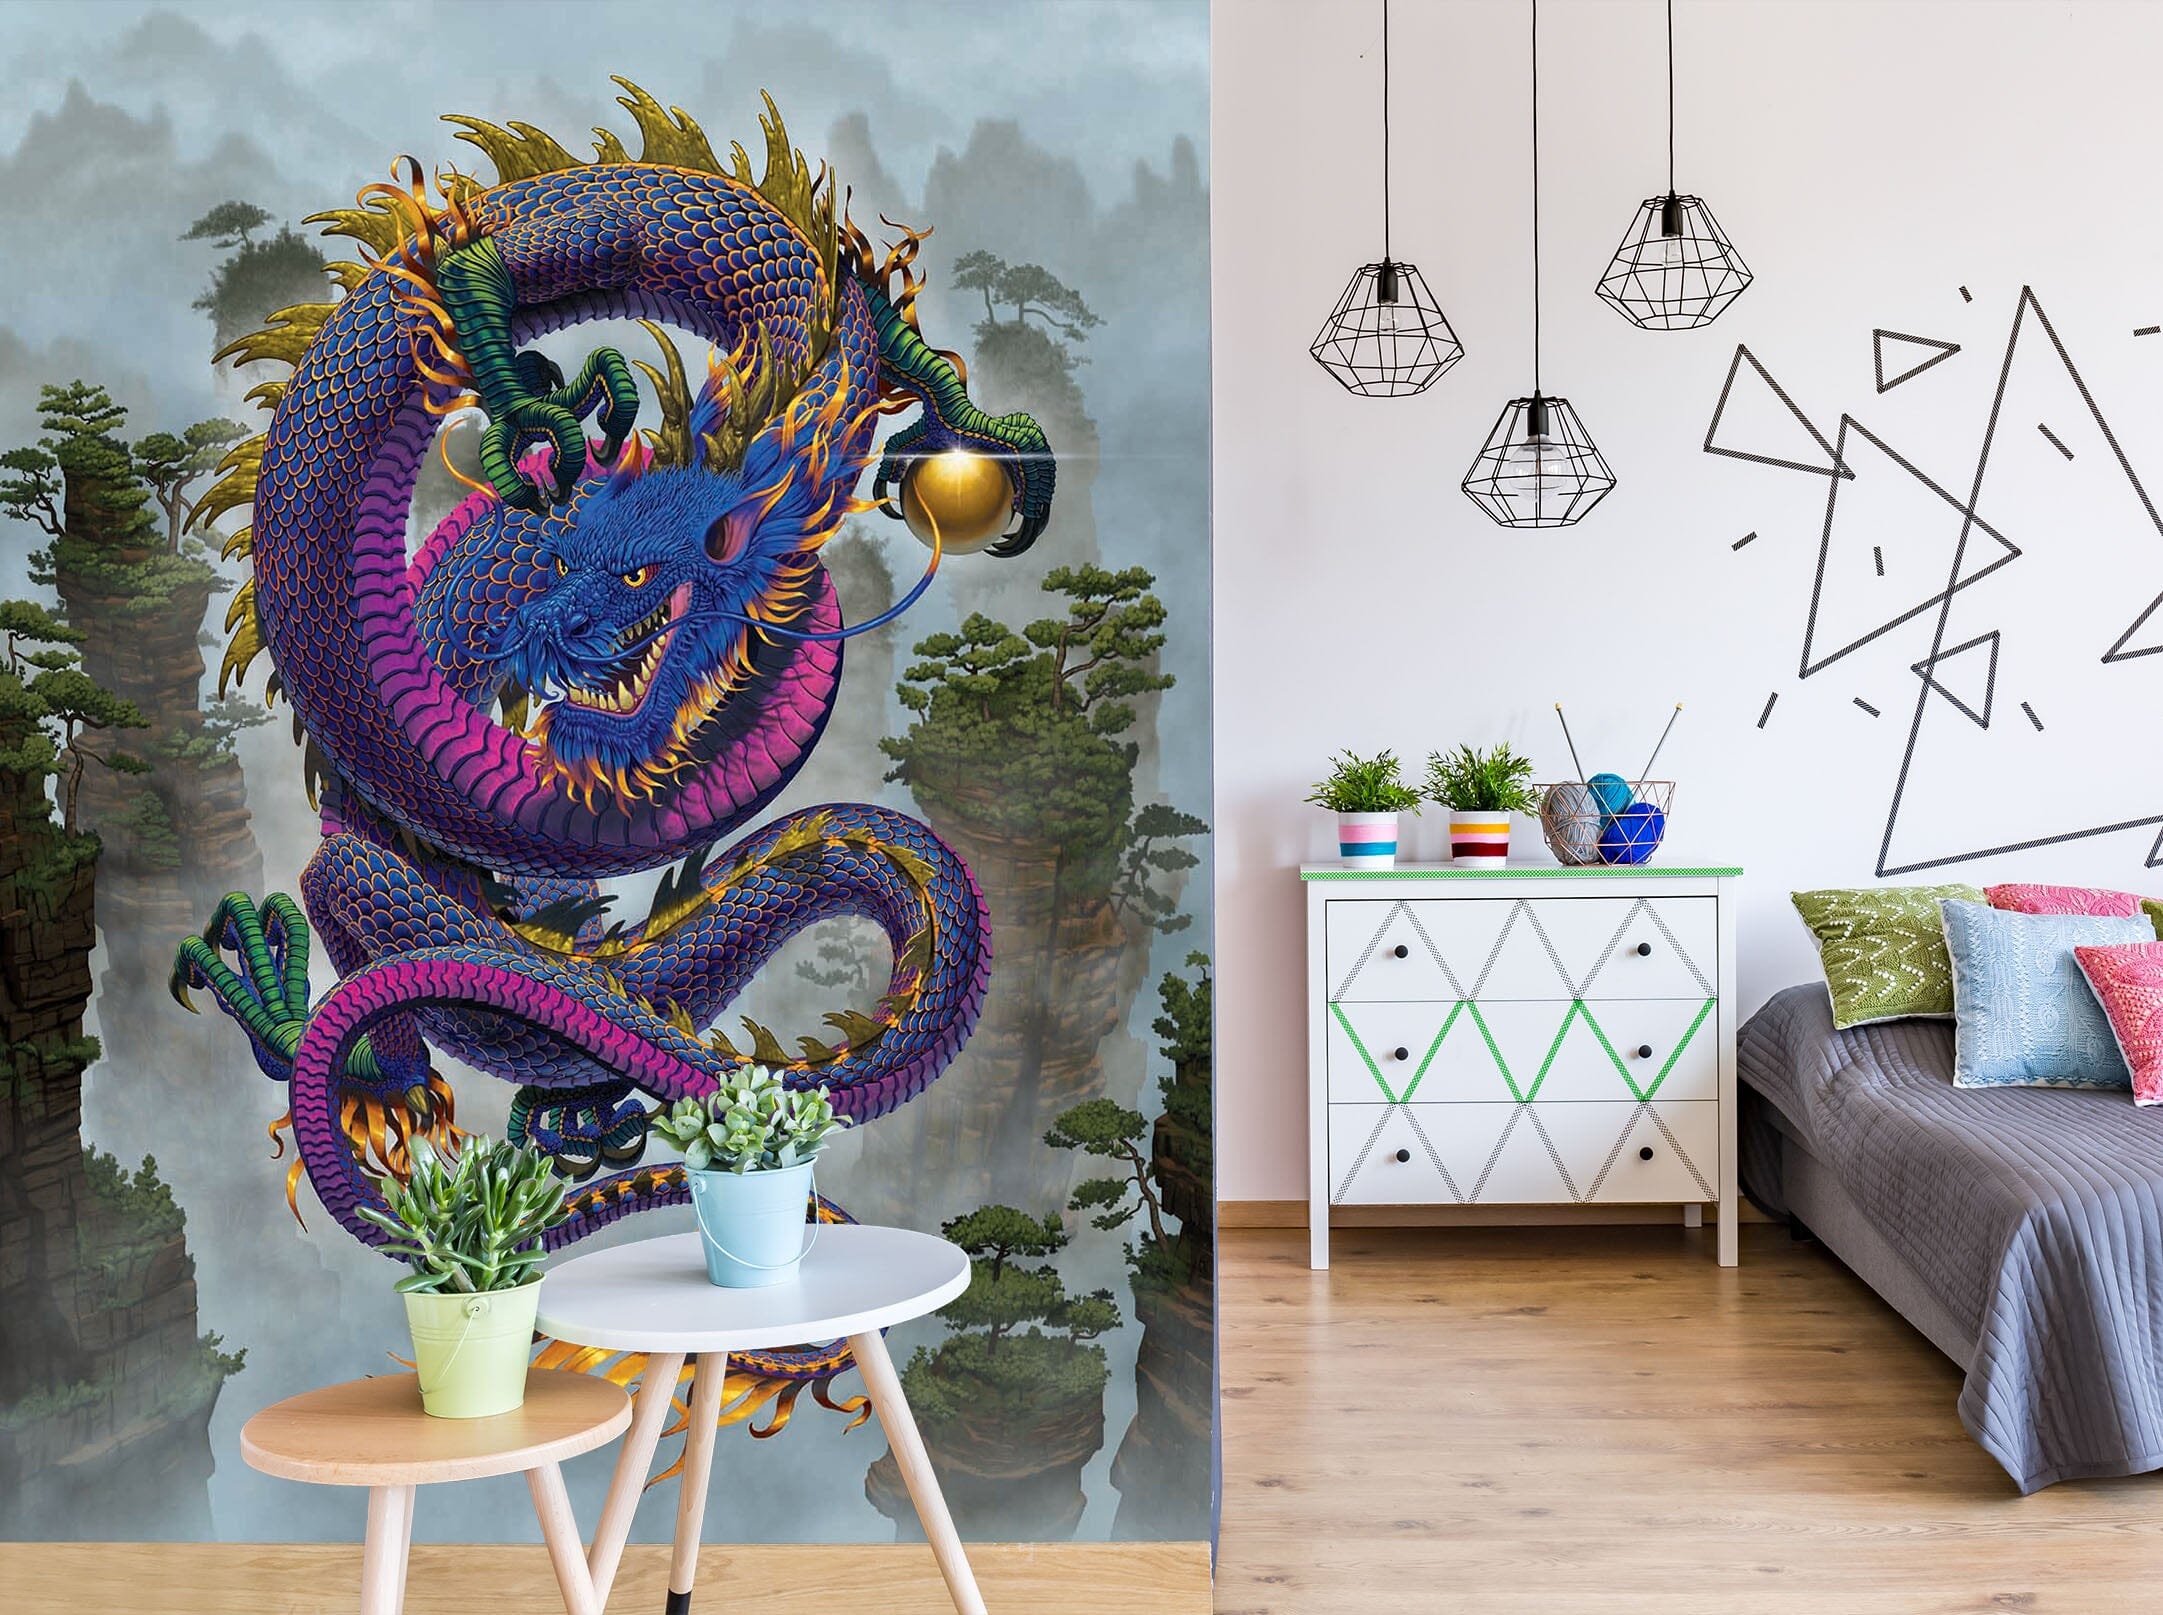 3D Purple Dragon 1518 Wall Murals Exclusive Designer Vincent Wallpaper AJ Wallpaper 2 